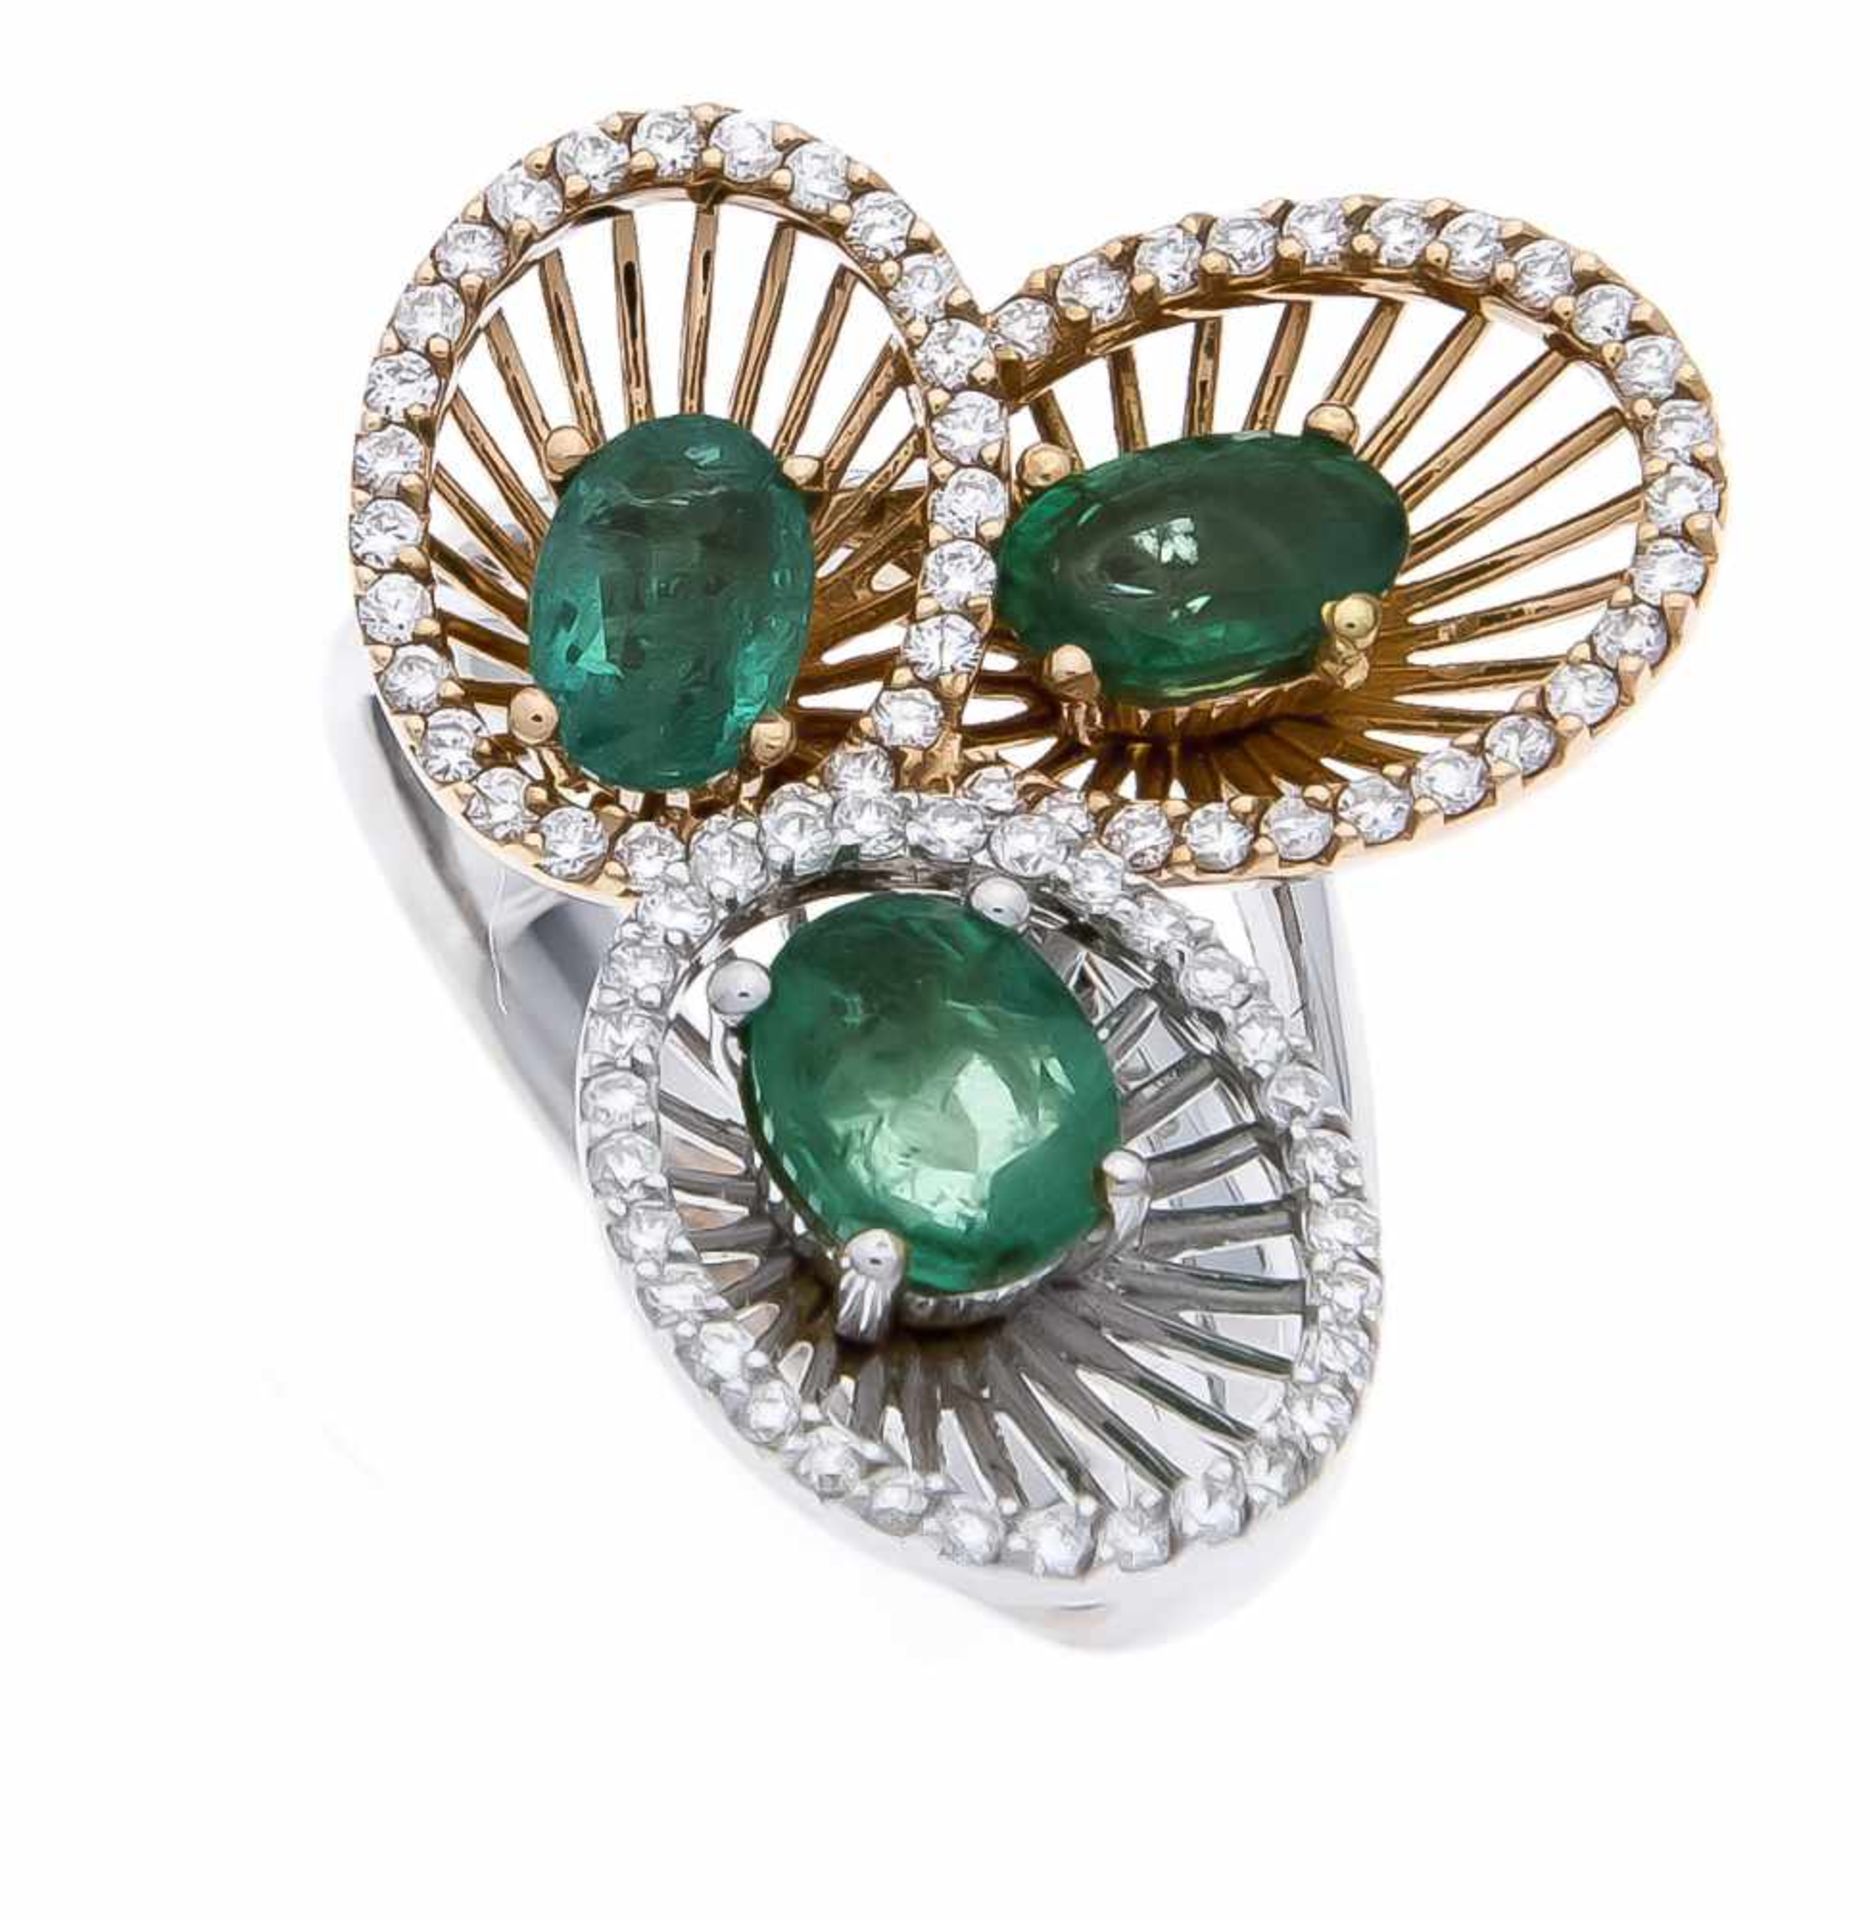 Smaragd-Brillant-Ring WG/GG 750/000 mit 3 oval fac. Smaragden, zus. 1,43 ct in guter Farbe und 81